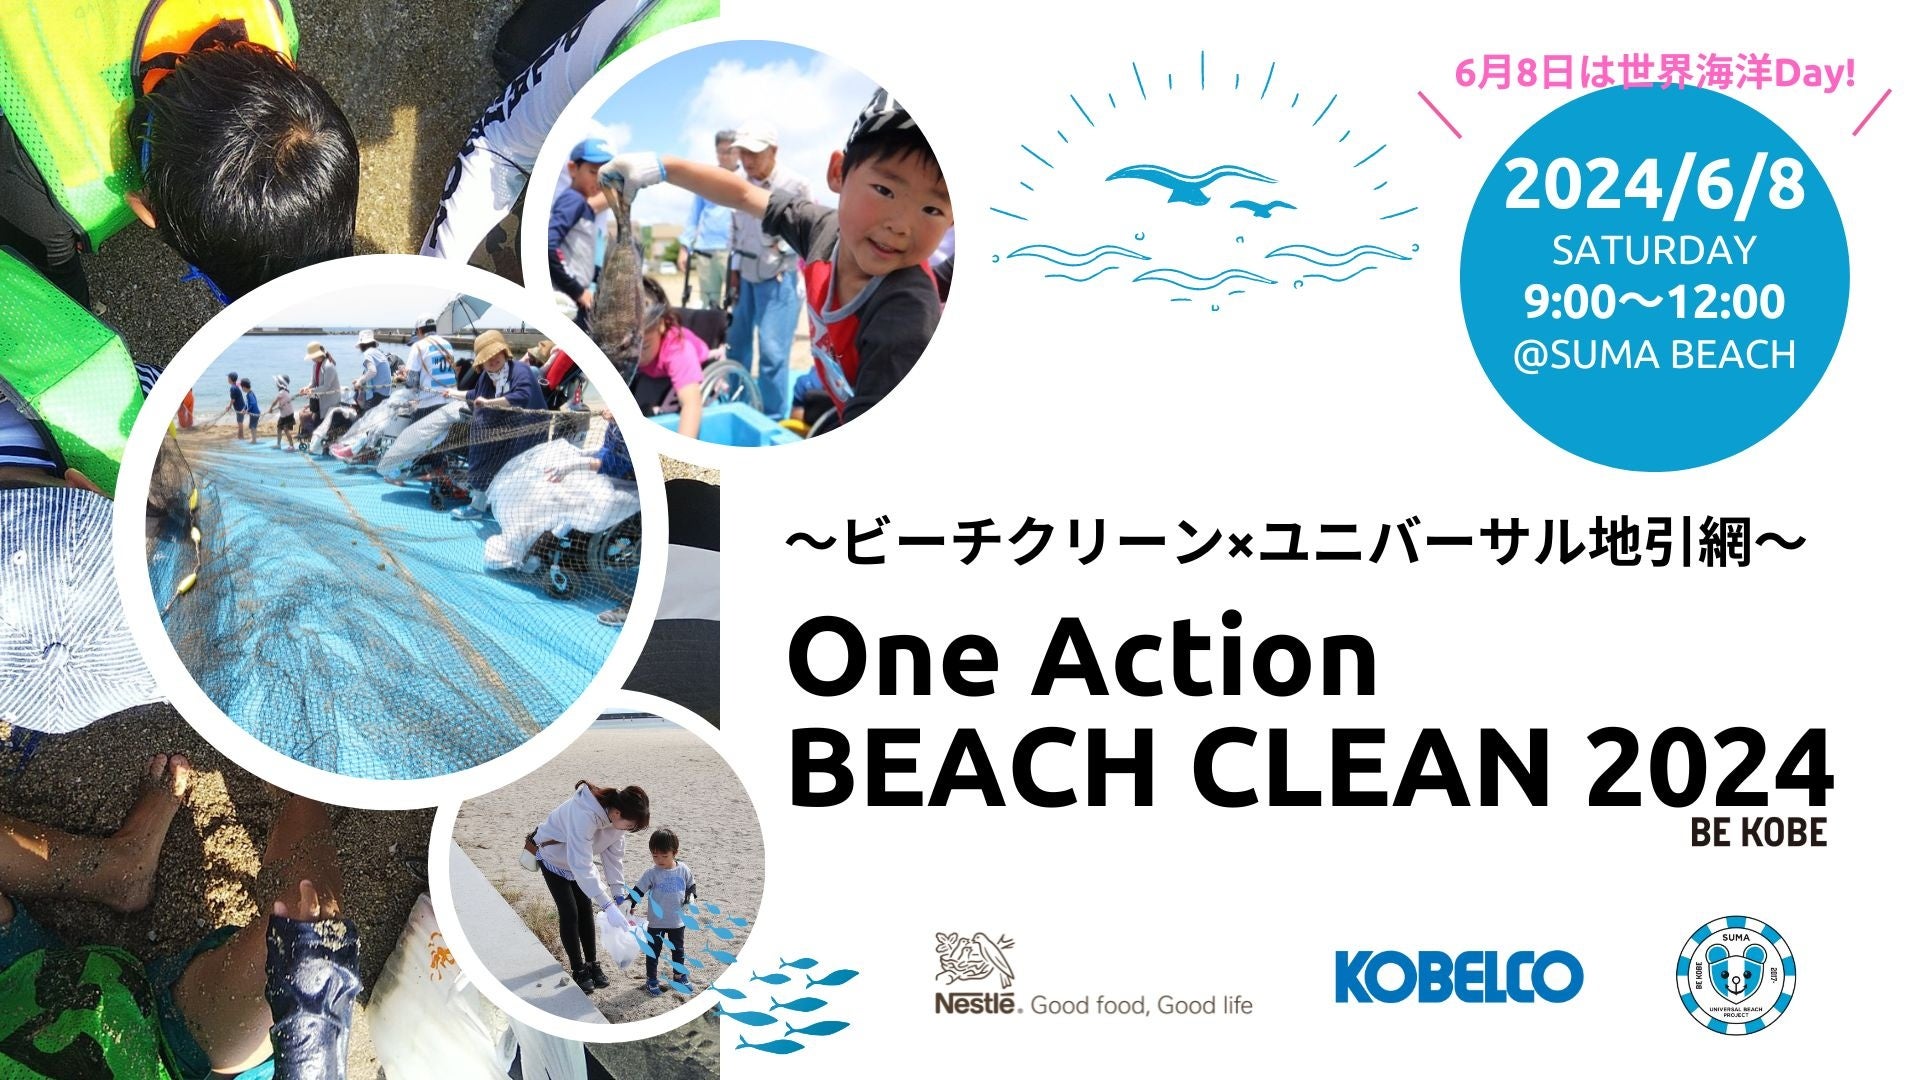 ネスレ×KOBELCO×須磨UBP 共同アクション『One Action Beach Clean 2024 ×ユニバーサル地引網』